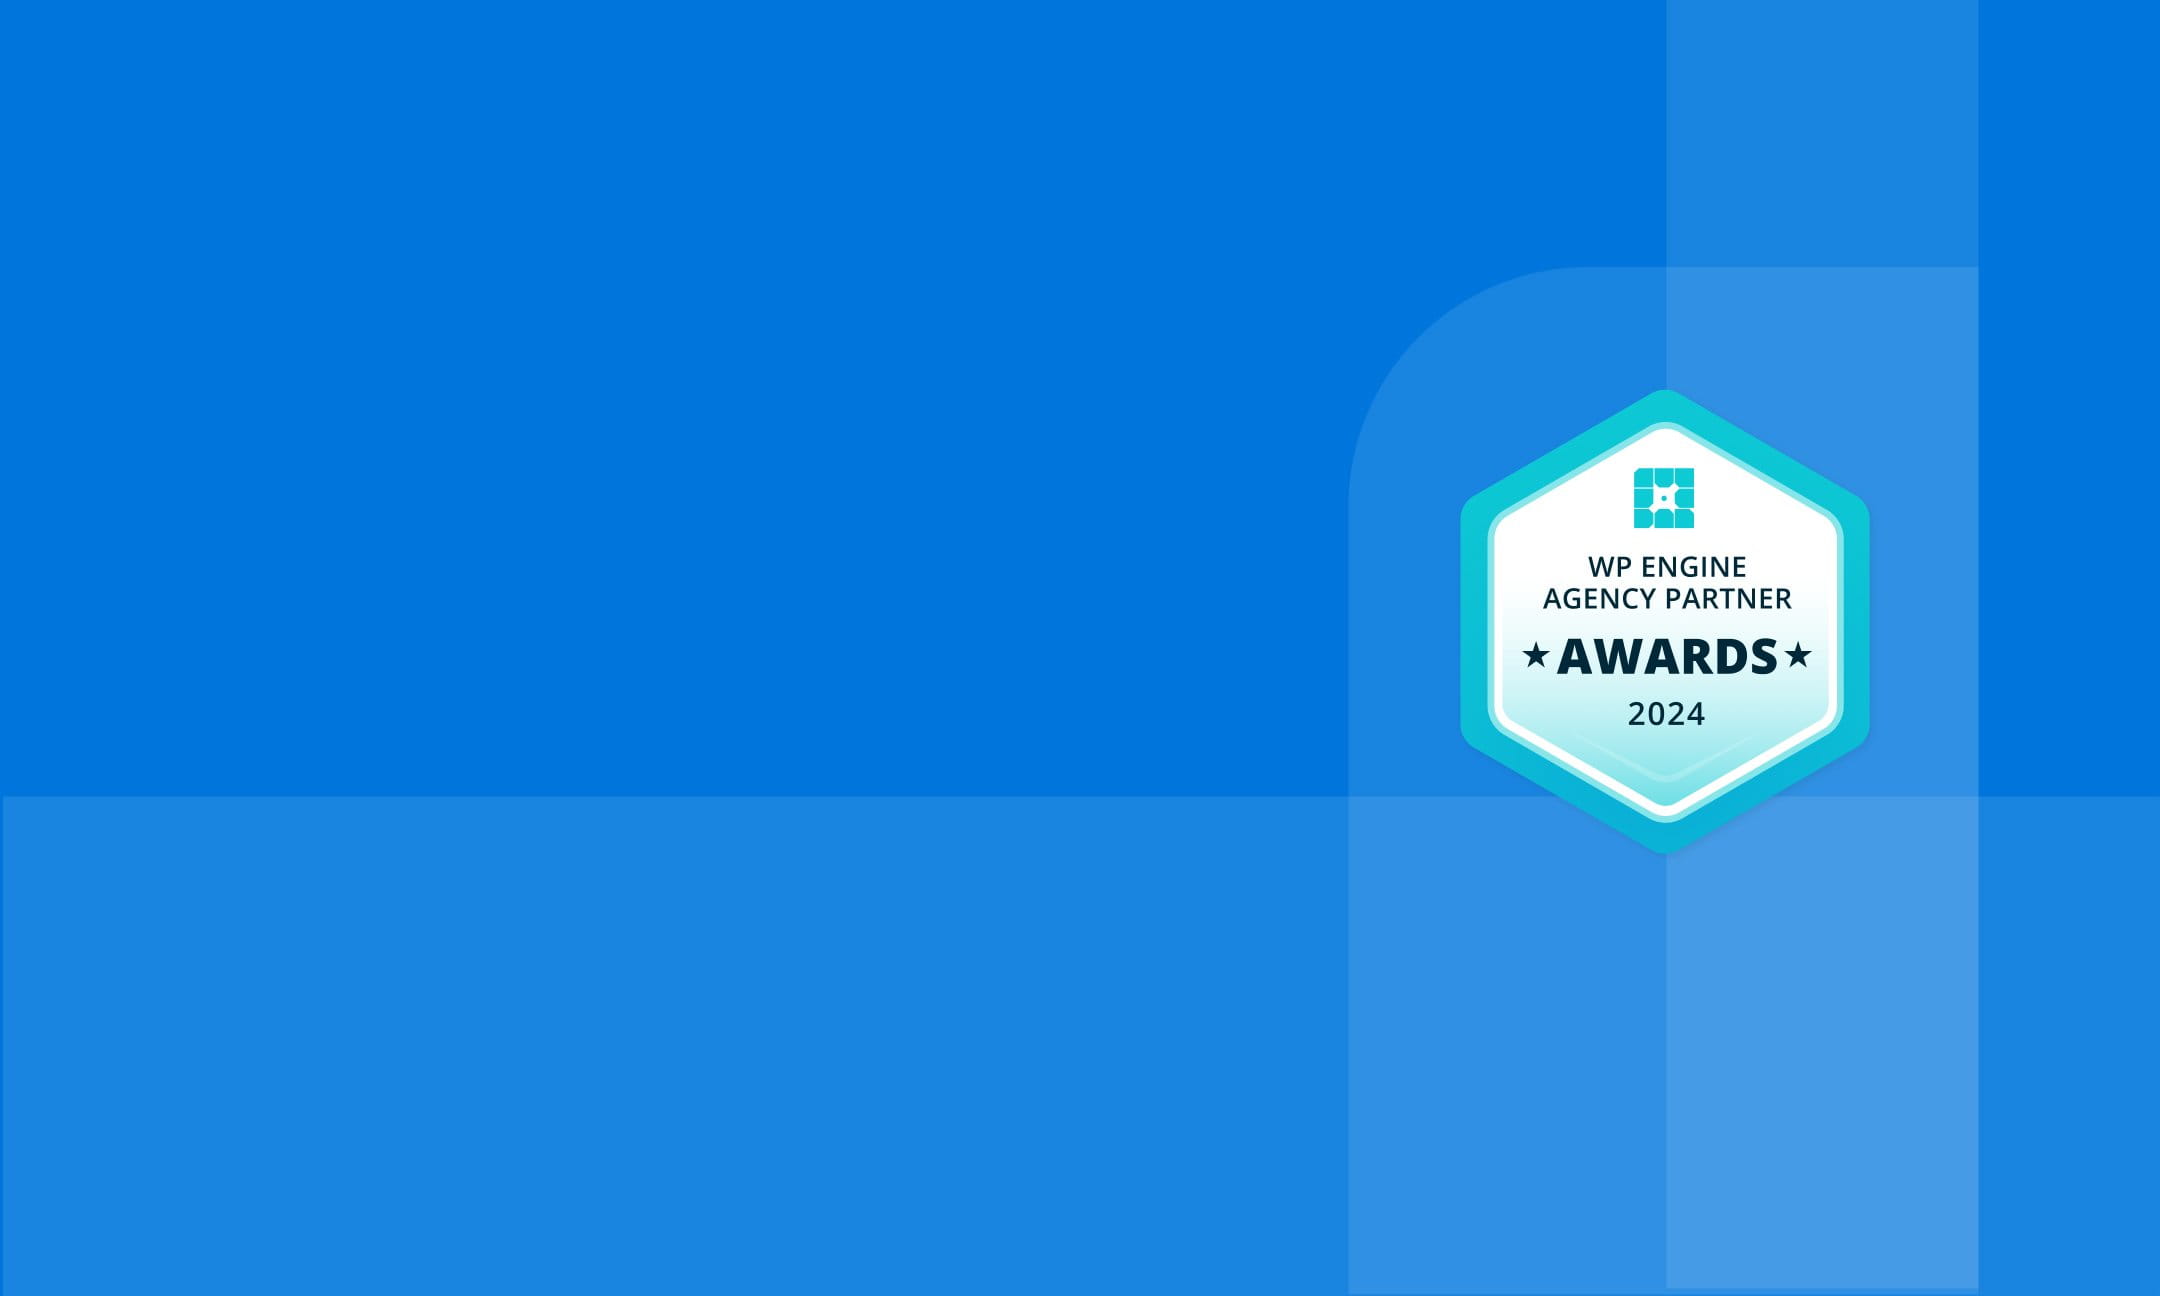 background image with agency partner award logo